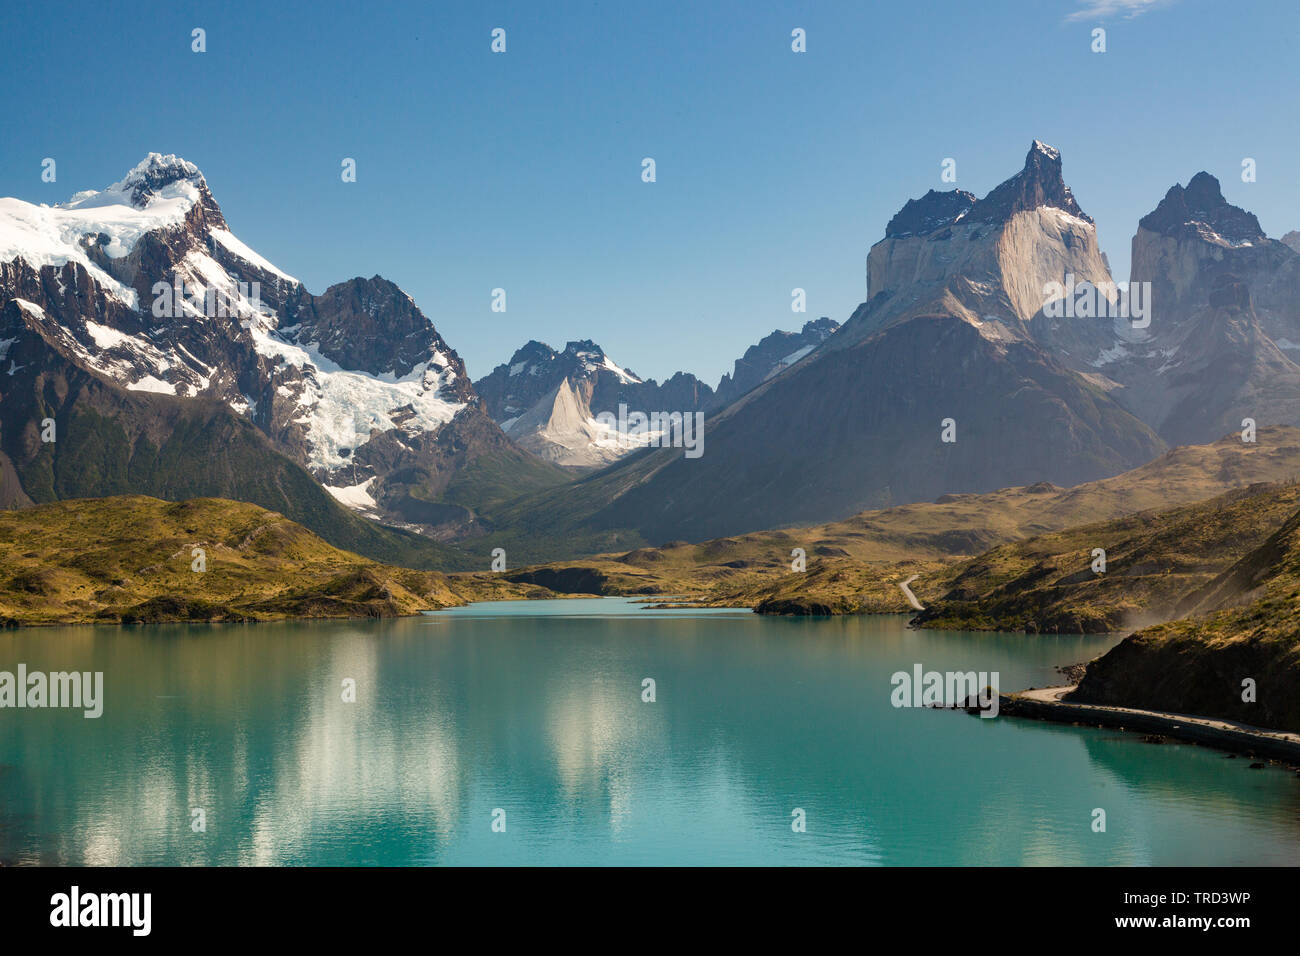 Reflet de Los Cuernos montagnes dans les eaux turquoises du Lago Pehoe, parc Torres del Paine, Patagonie, Chili Banque D'Images